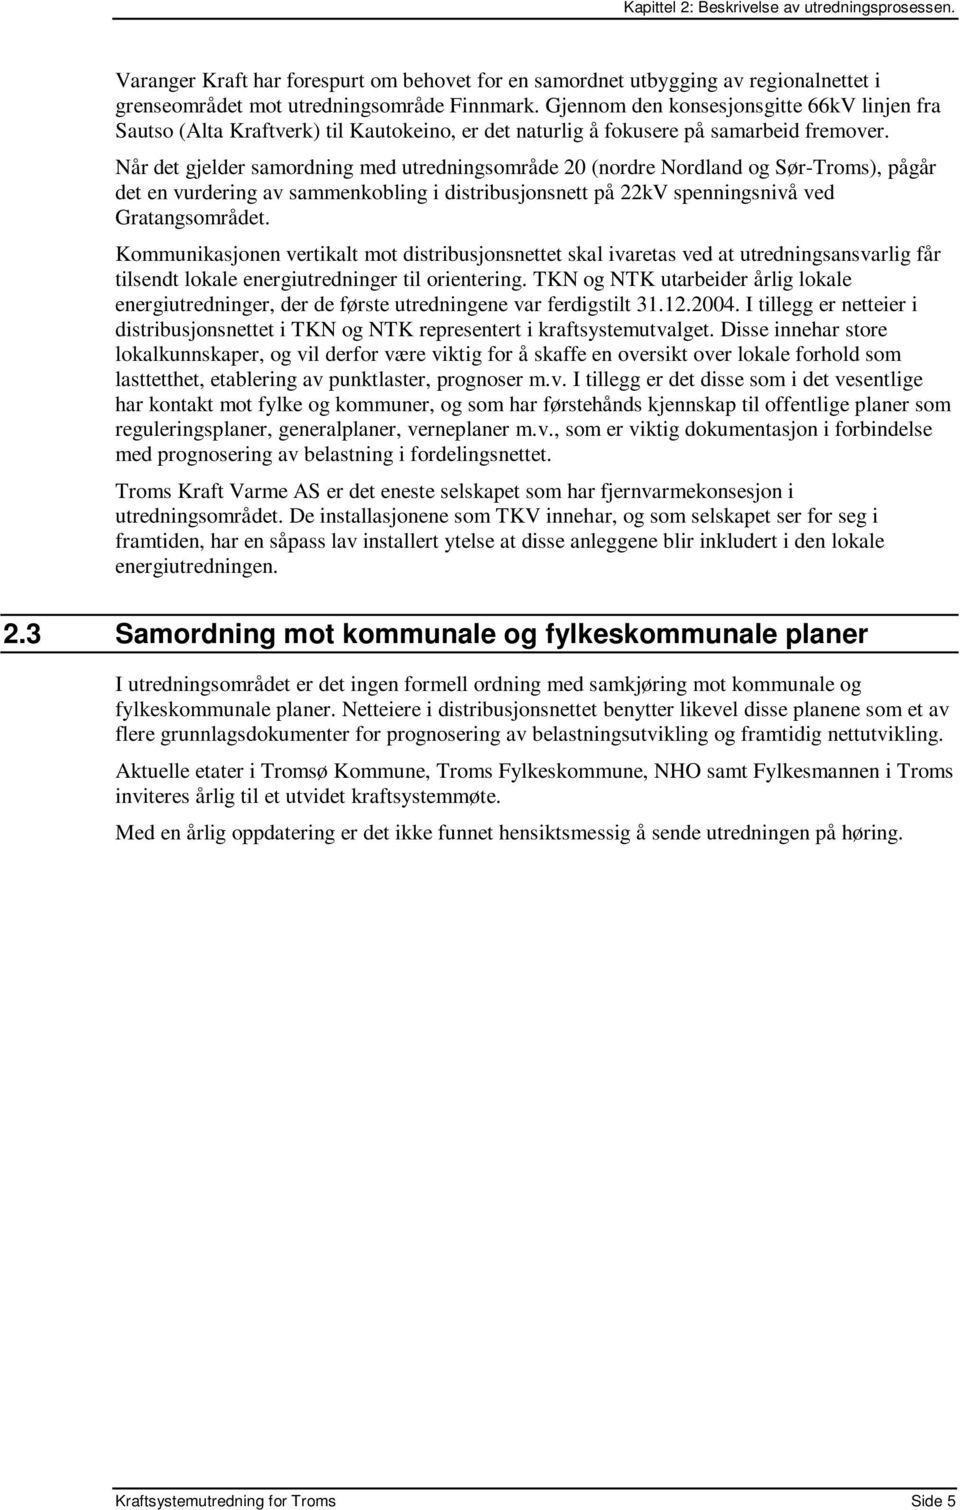 Når det gjelder samordning med utredningsområde 20 (nordre Nordland og Sør-Troms), pågår det en vurdering av sammenkobling i distribusjonsnett på 22kV spenningsnivå ved Gratangsområdet.